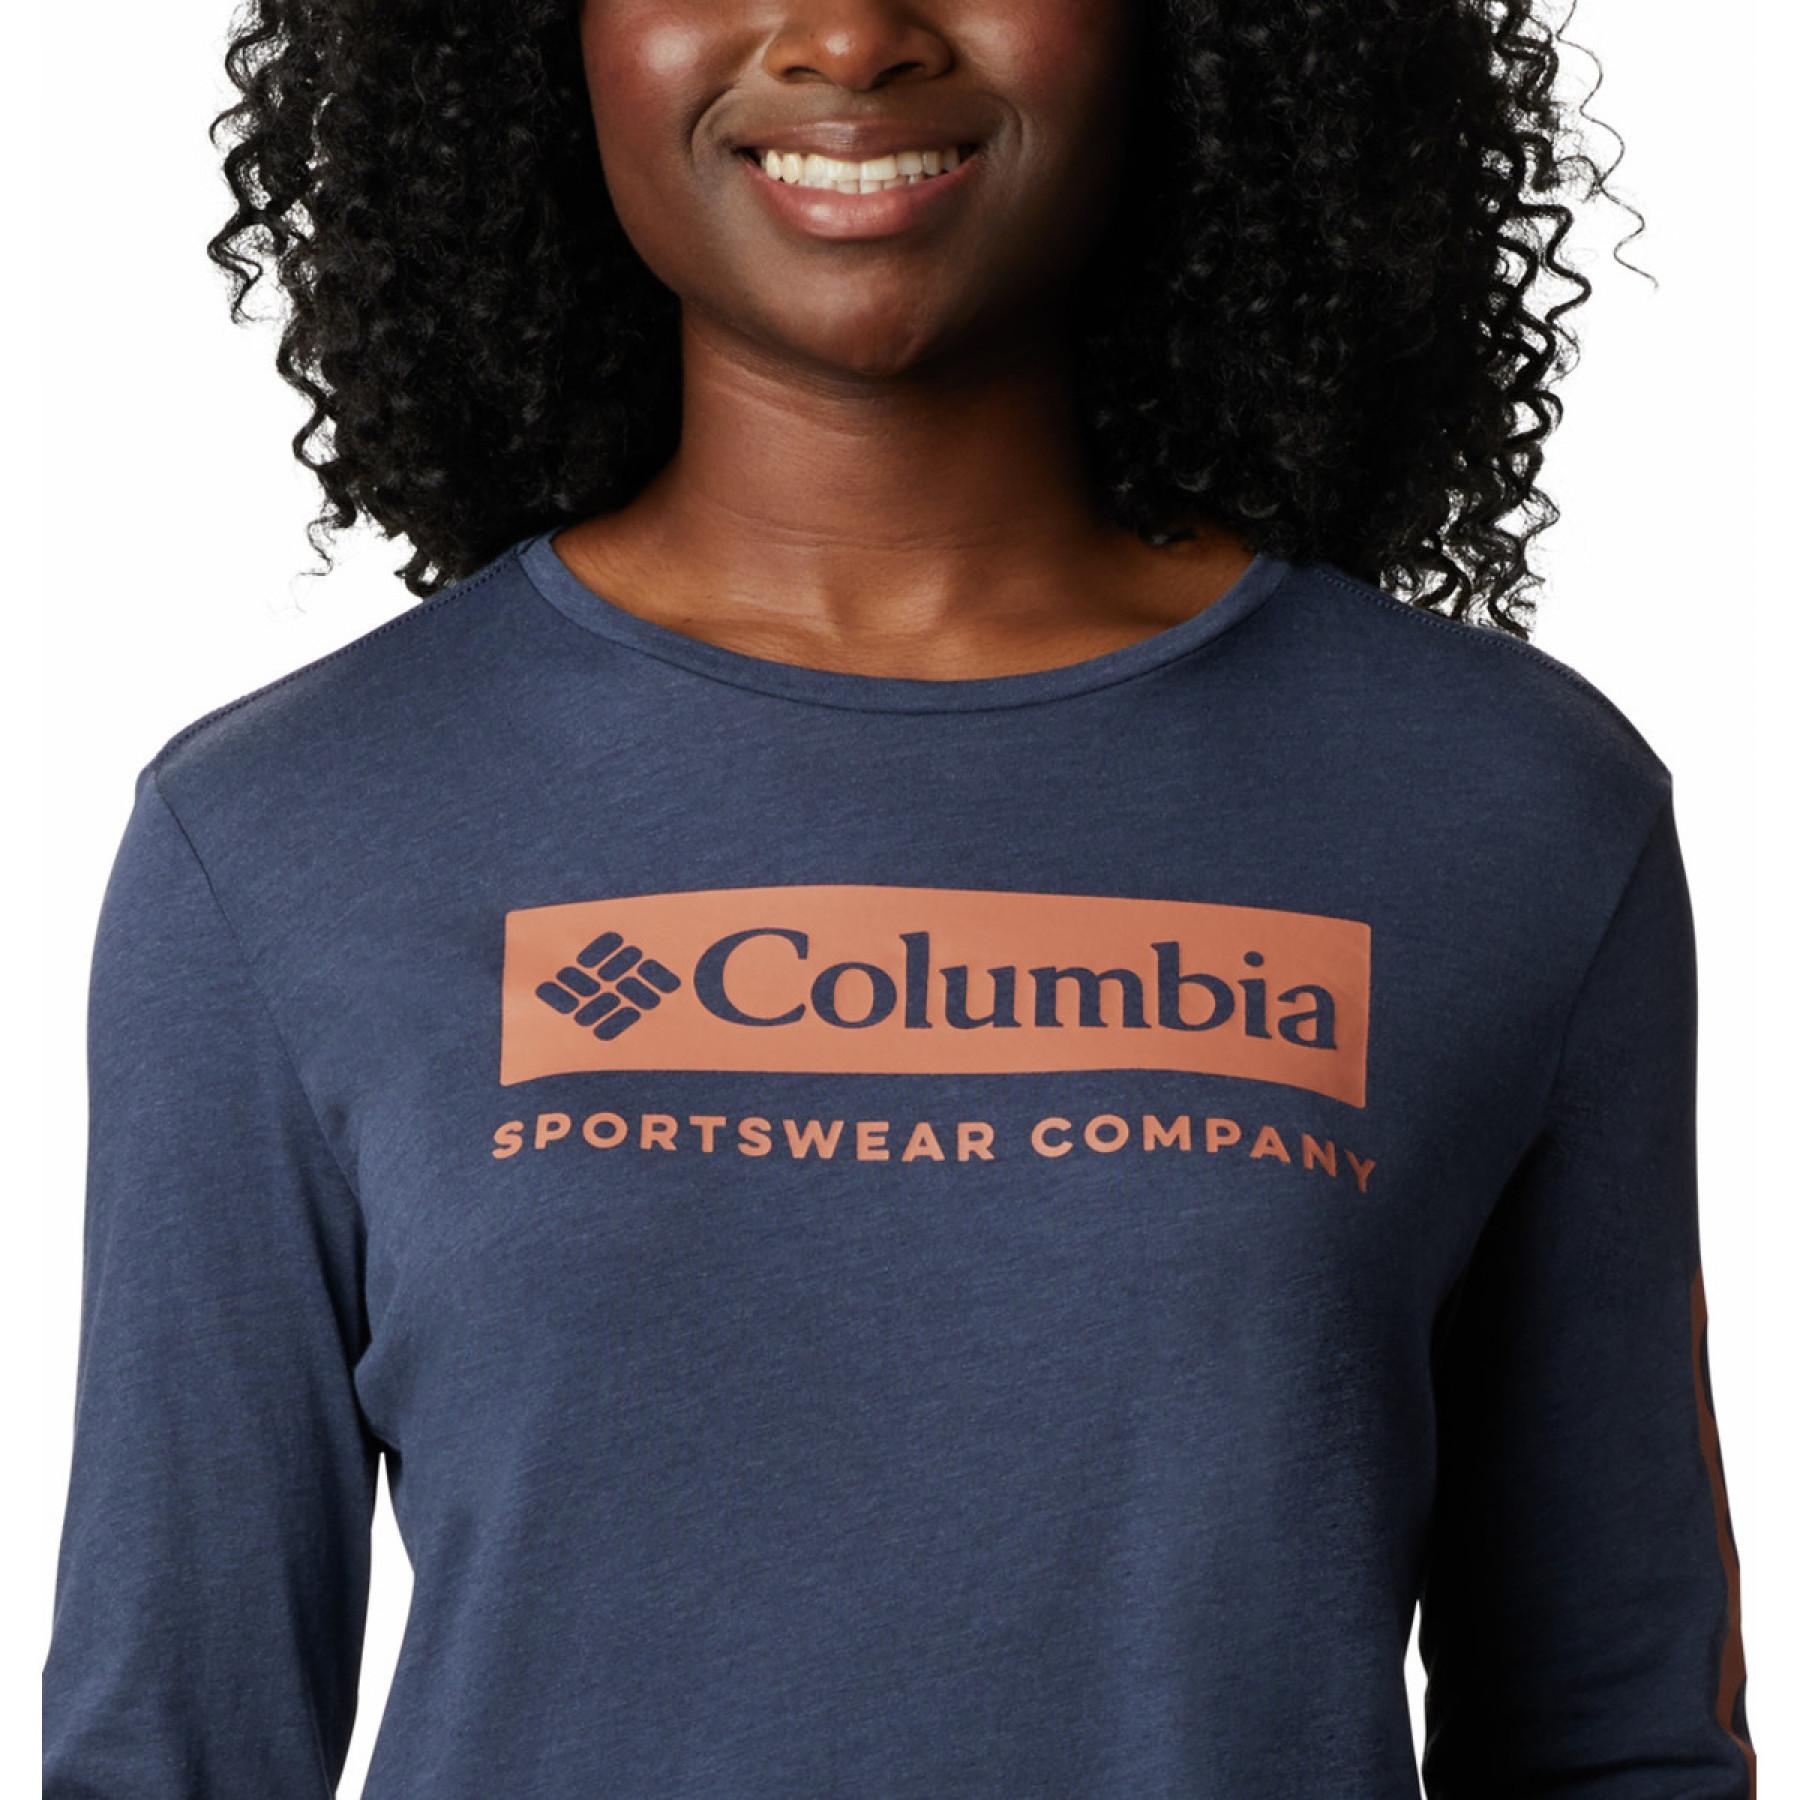 Langarm-T-Shirt für Frauen Columbia Autumn Trek